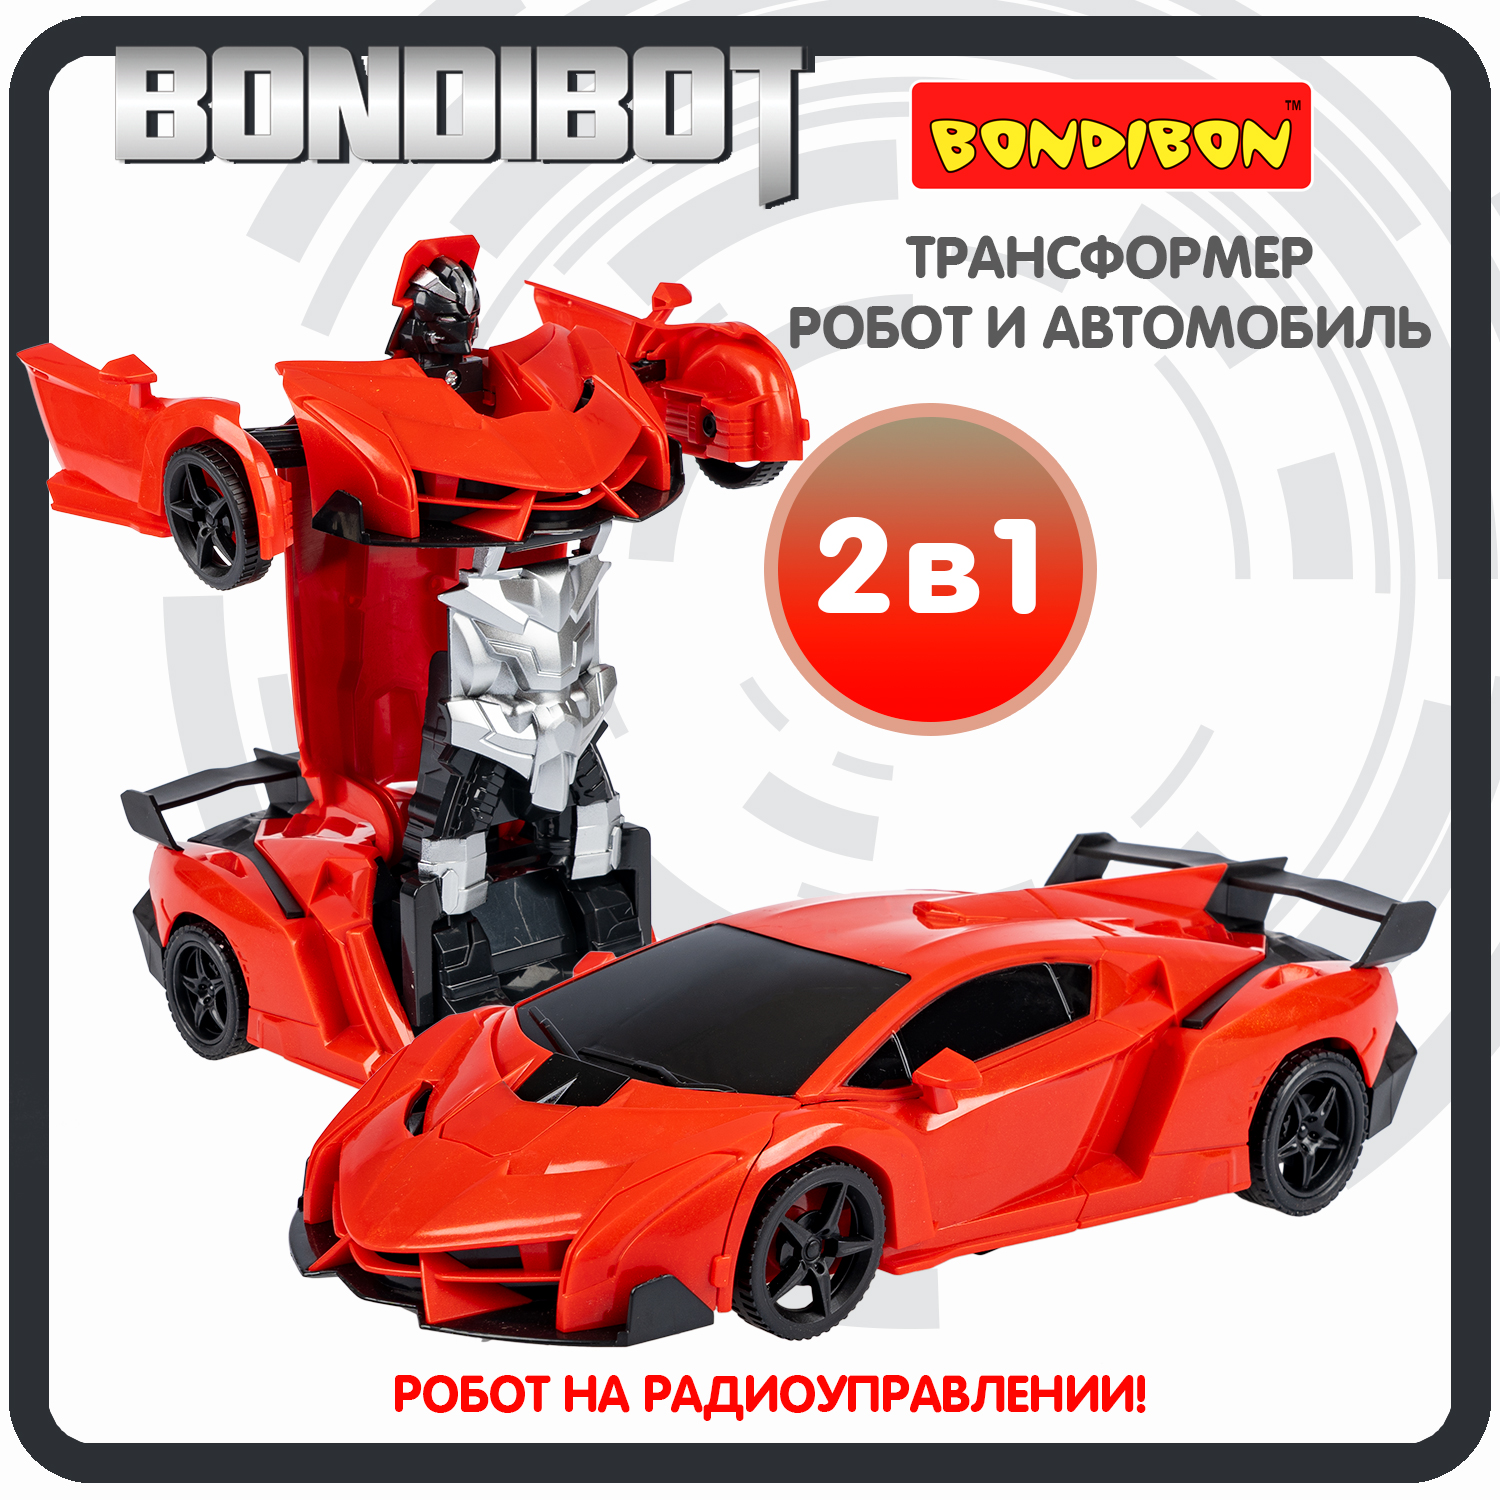 Трансформер 2в1 BONDIBOT на радиоуправлении робот и автомобиль /ВВ6066 трансформер 2в1 bondibot на радиоуправлении робот и автомобиль вв6068